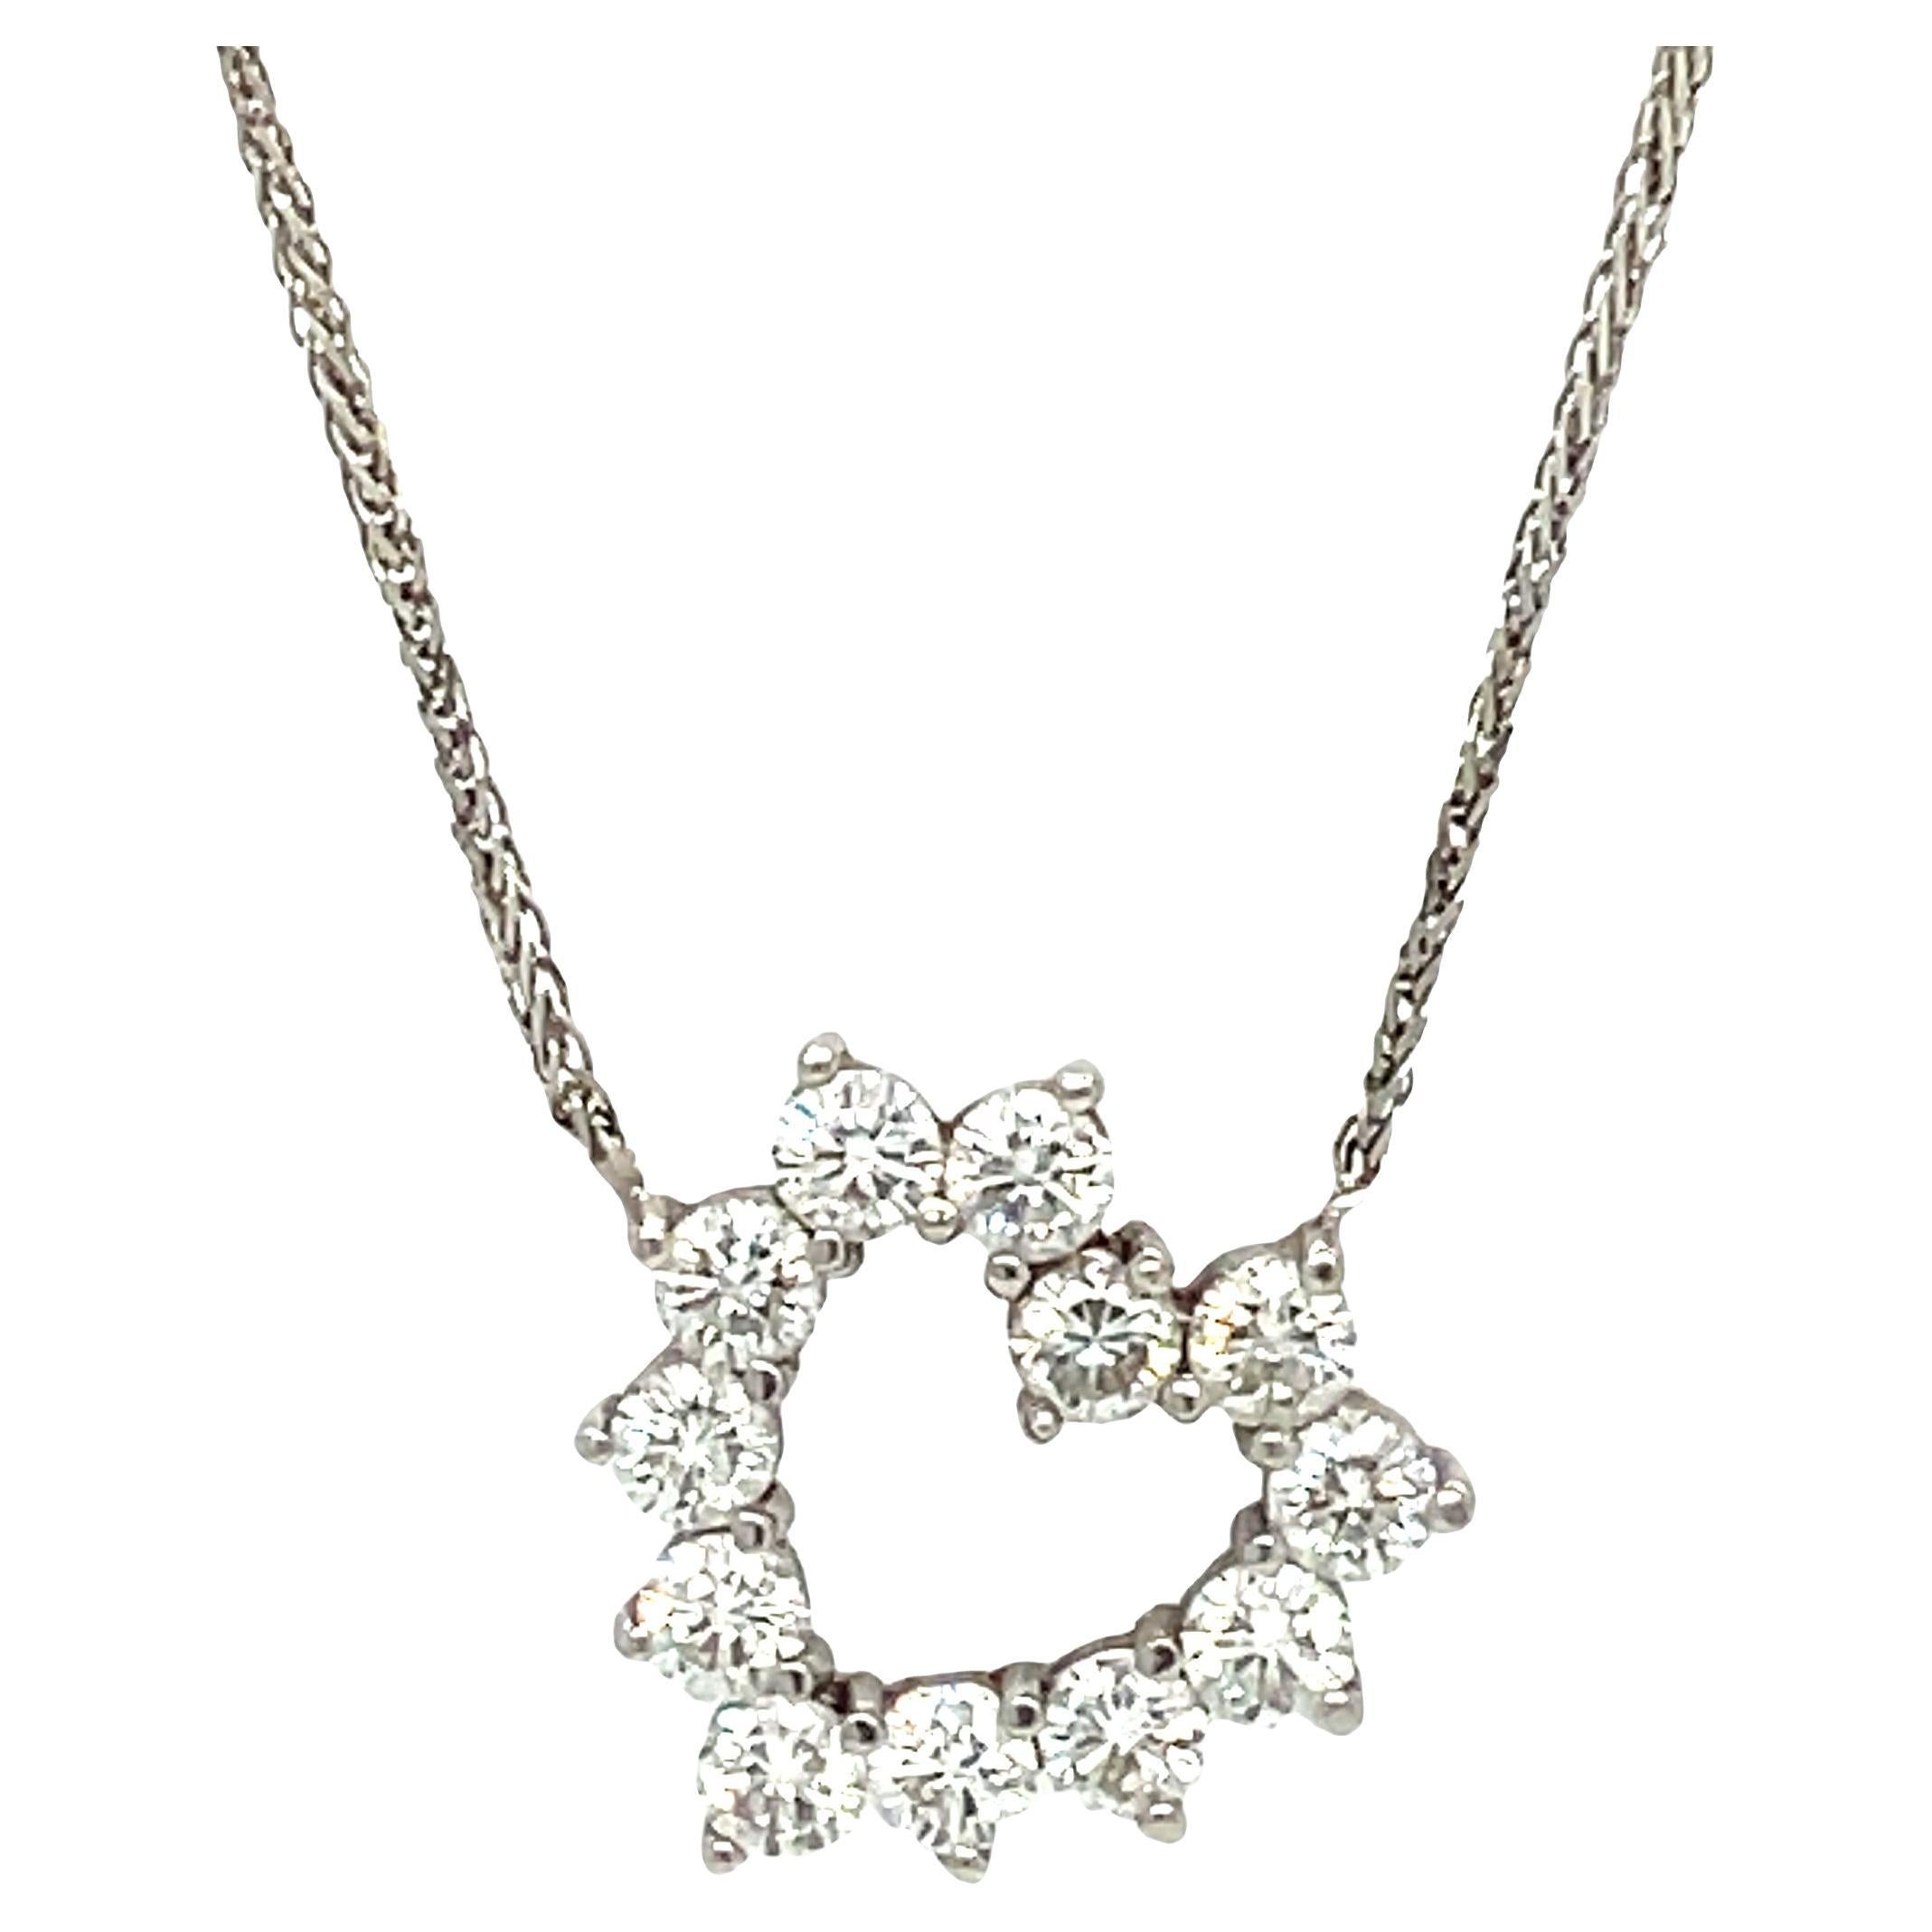 Le coup de foudre. Ce collier pendentif en diamant en forme de cœur est un symbole étincelant de l'amour. Le collier met en valeur de magnifiques diamants ronds et brillants qui feront battre son cœur. 

Réalisé en or blanc 14 carats, ce collier